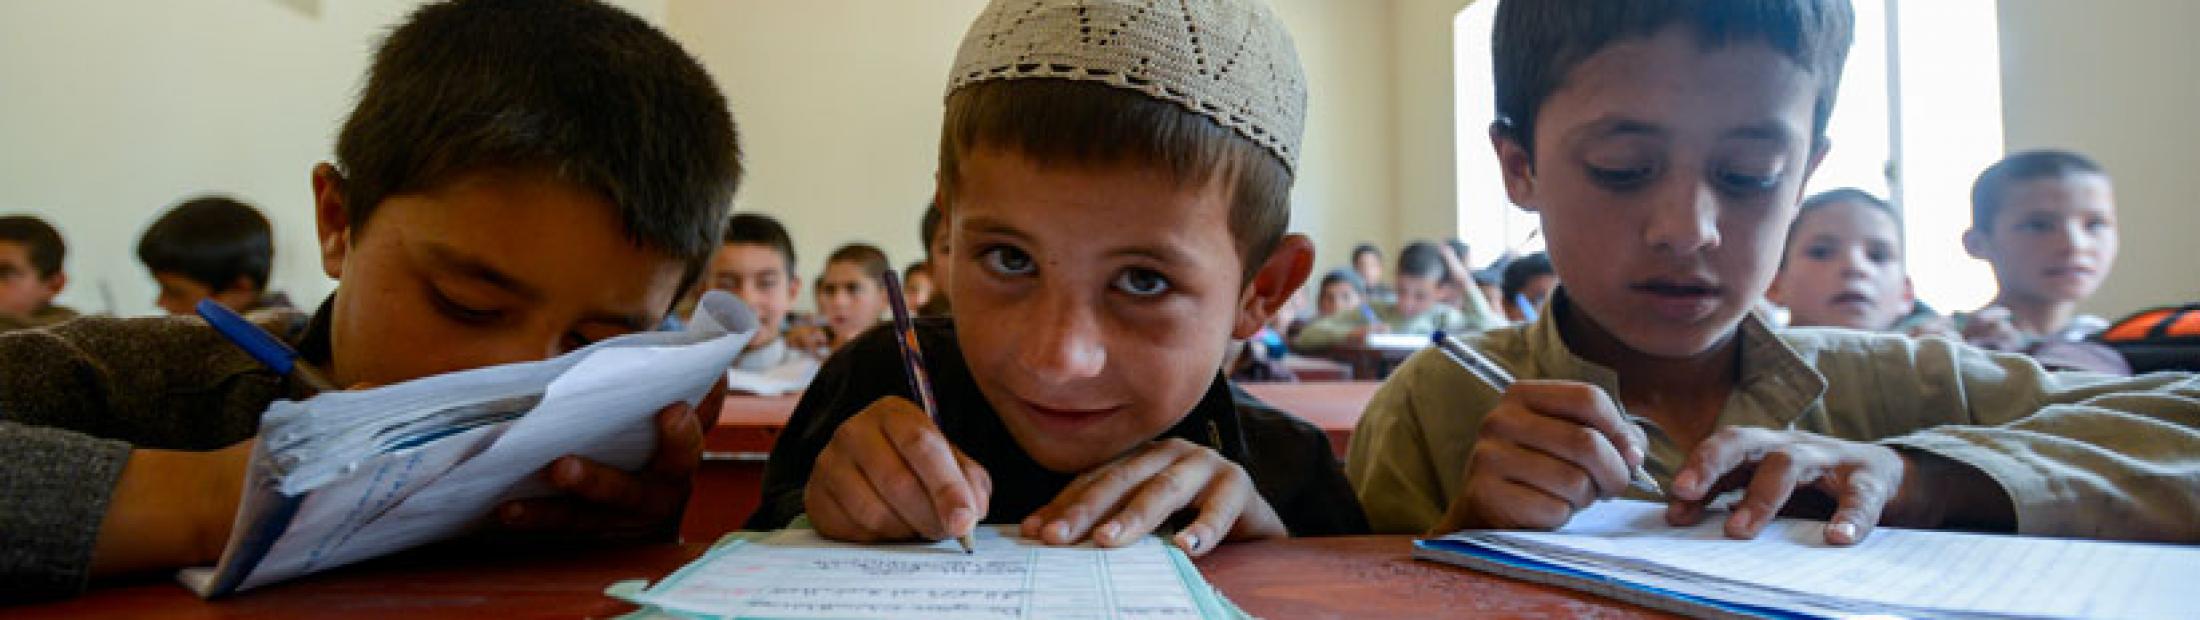 Acoso escolar en niñas y niños refugiados